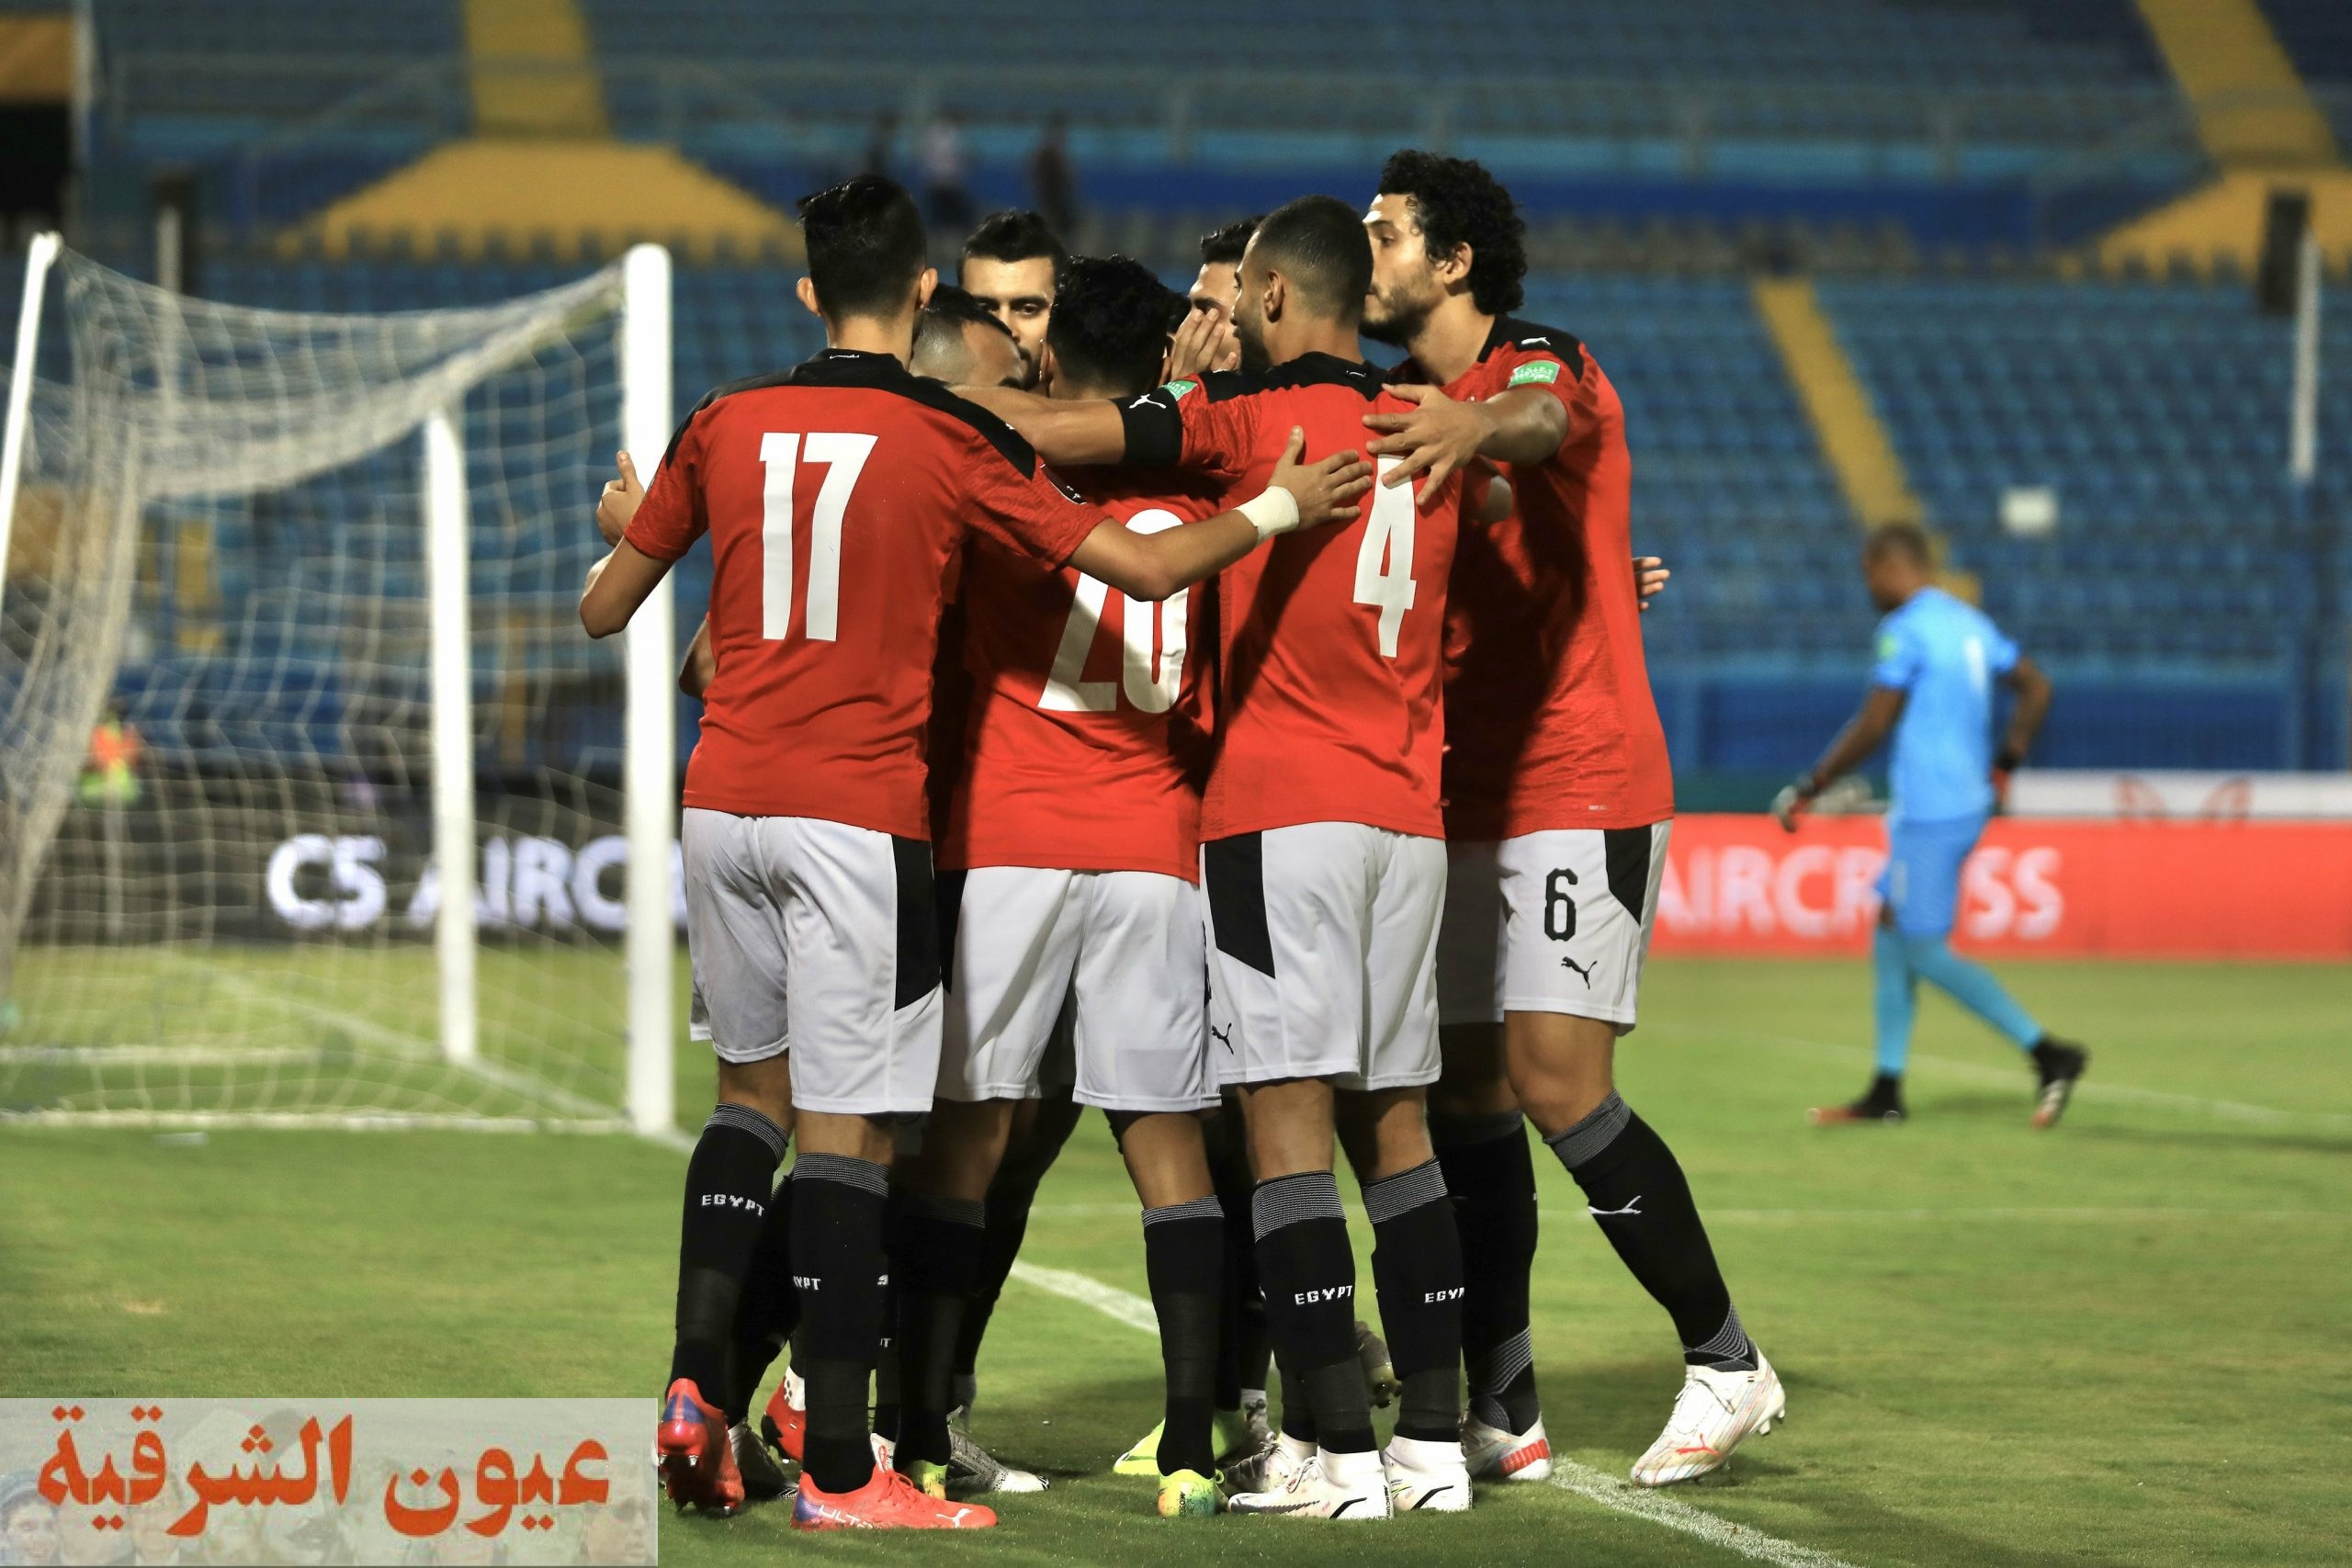 التشكيل الرسمي للمنتخب الوطني أمام تونس فى نصف نهائي كأس العرب